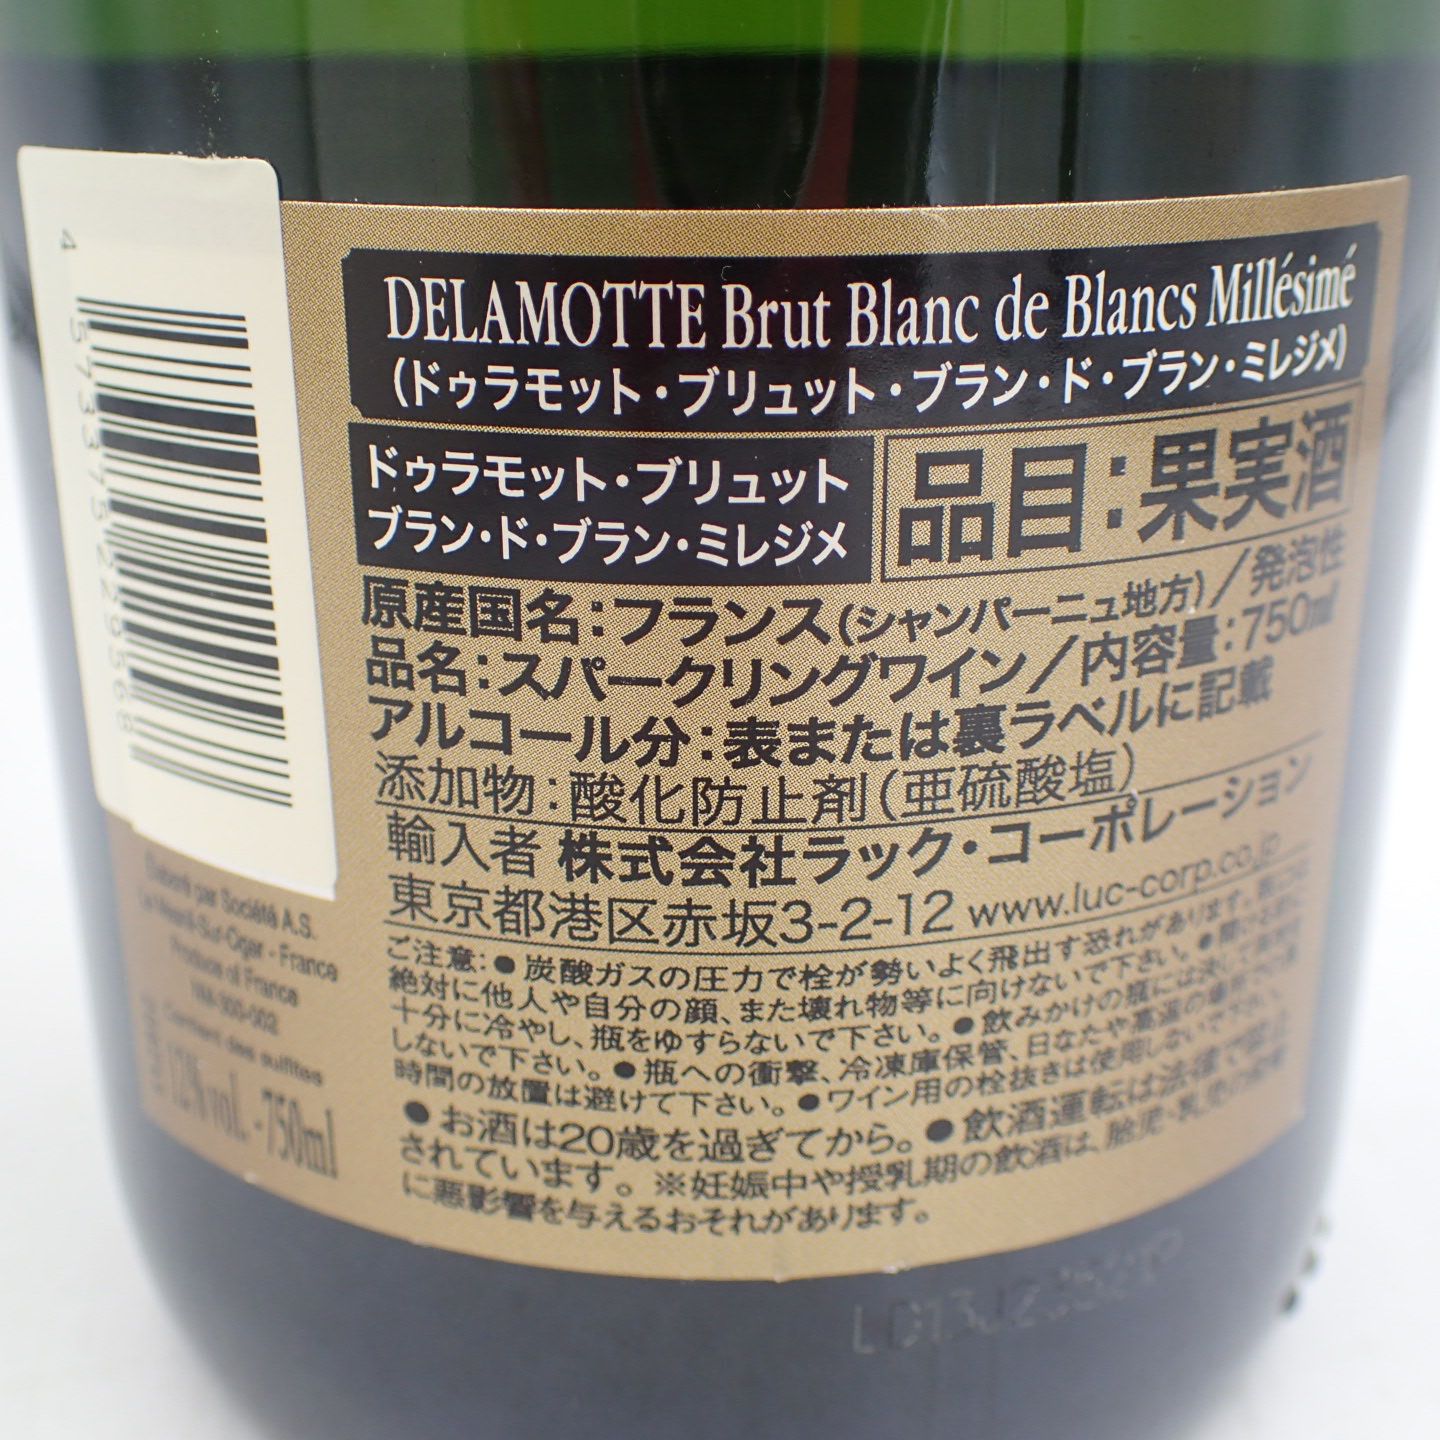 ドゥラモット ブリュット ブラン・ド ・ブラン ミレジム 2012 - 飲料/酒